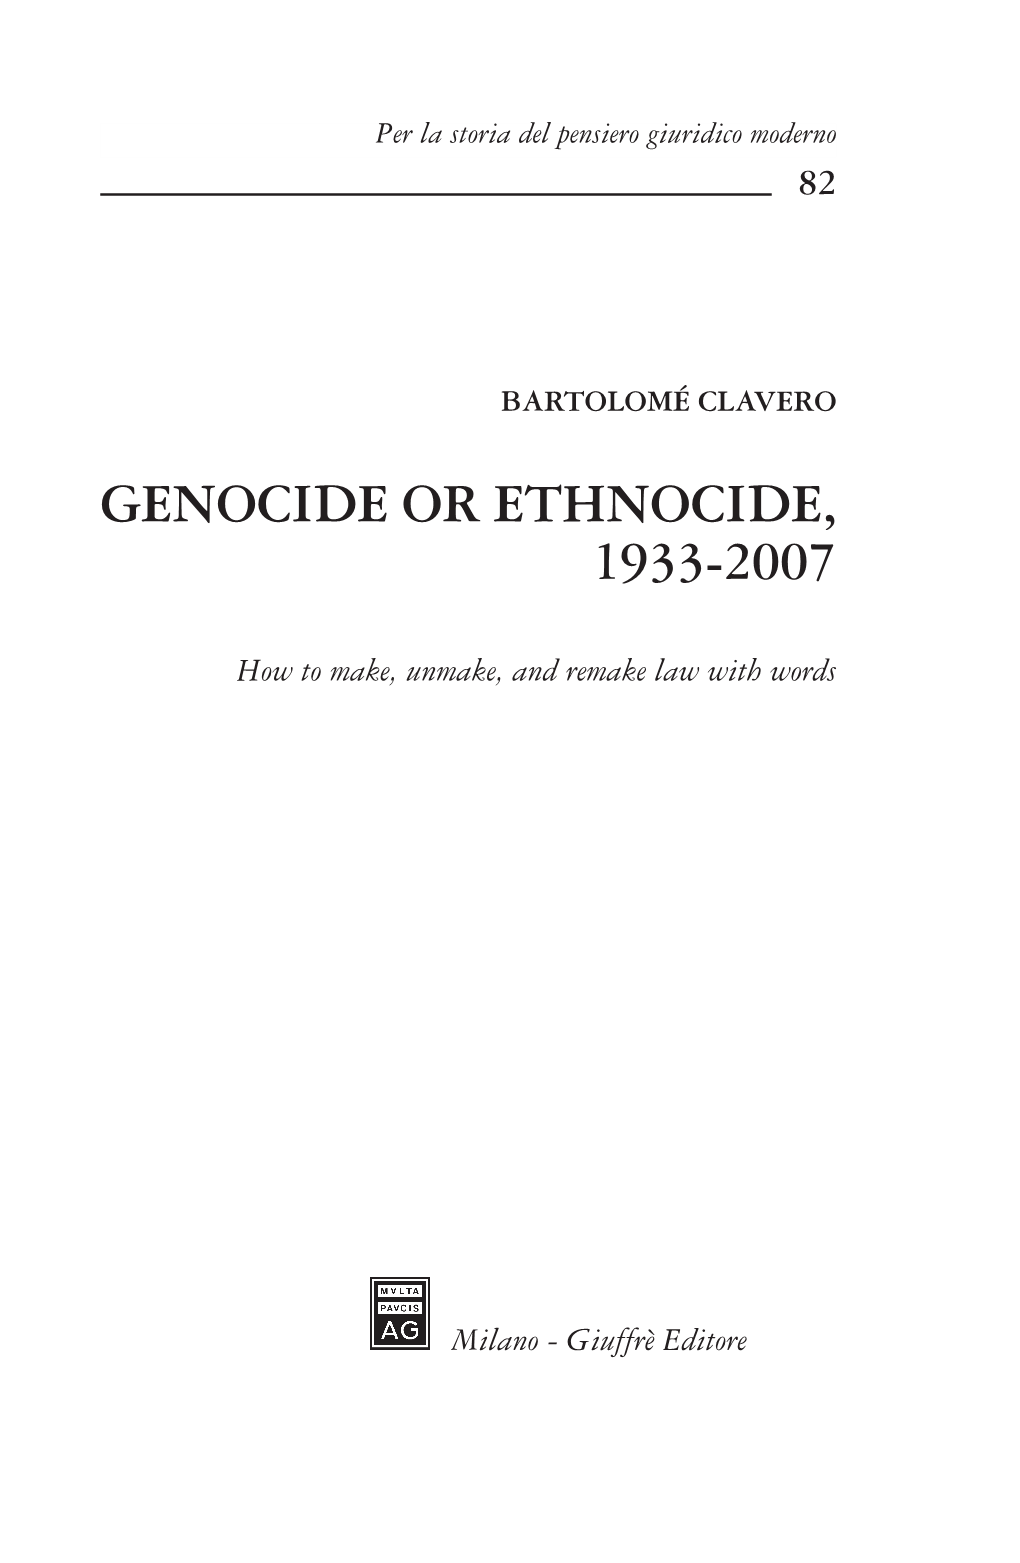 Genocide Or Ethnocide, 1933-2007